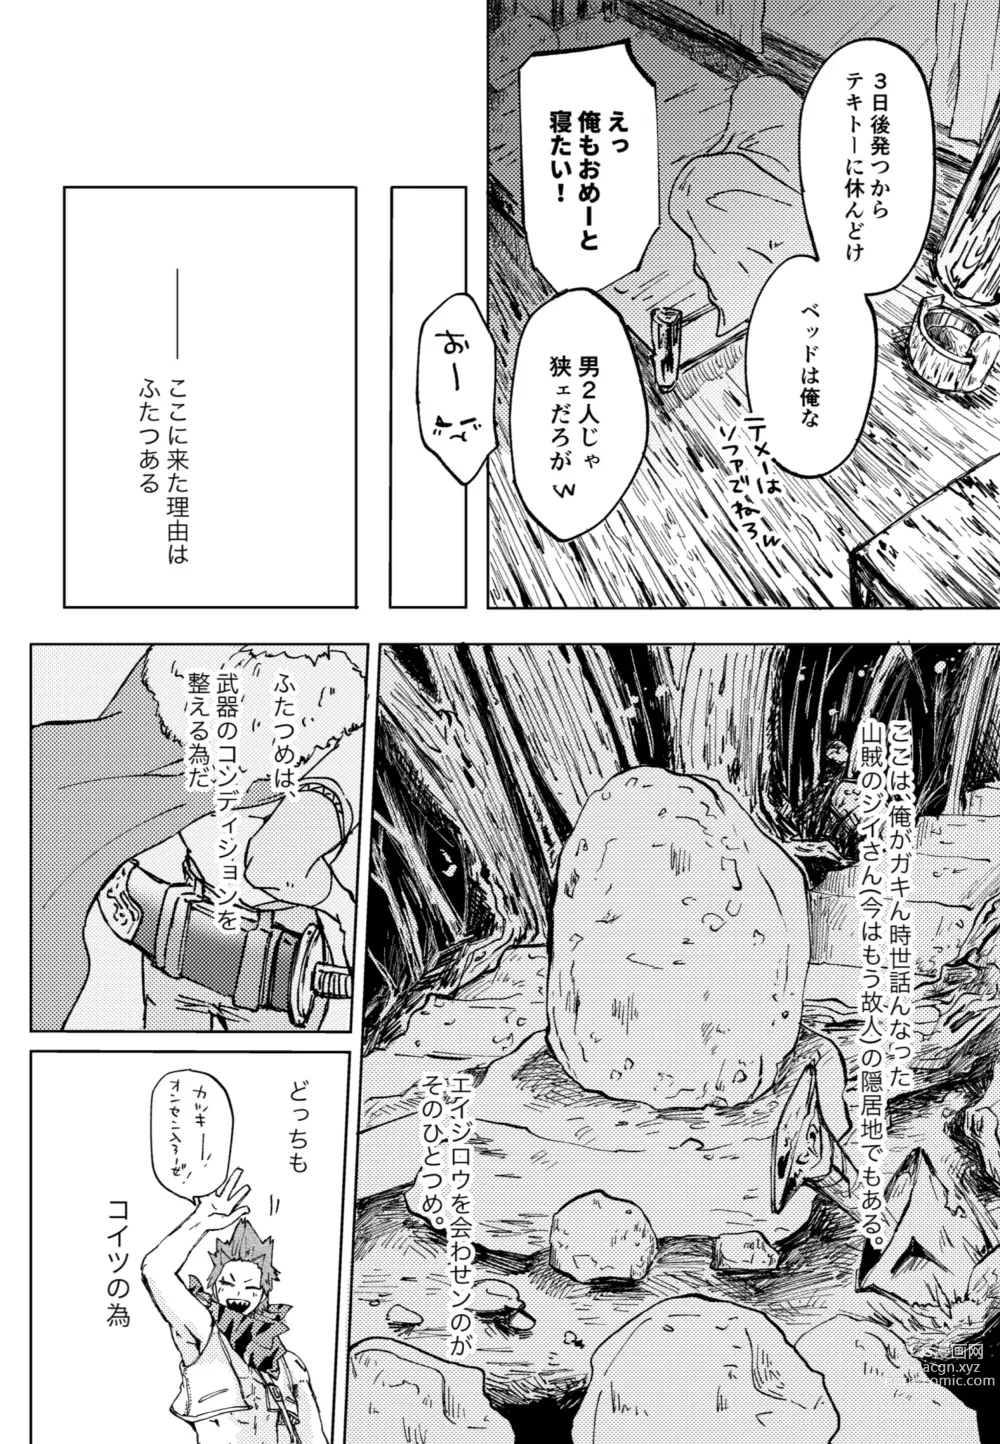 Page 4 of doujinshi Futatsu no Inochi